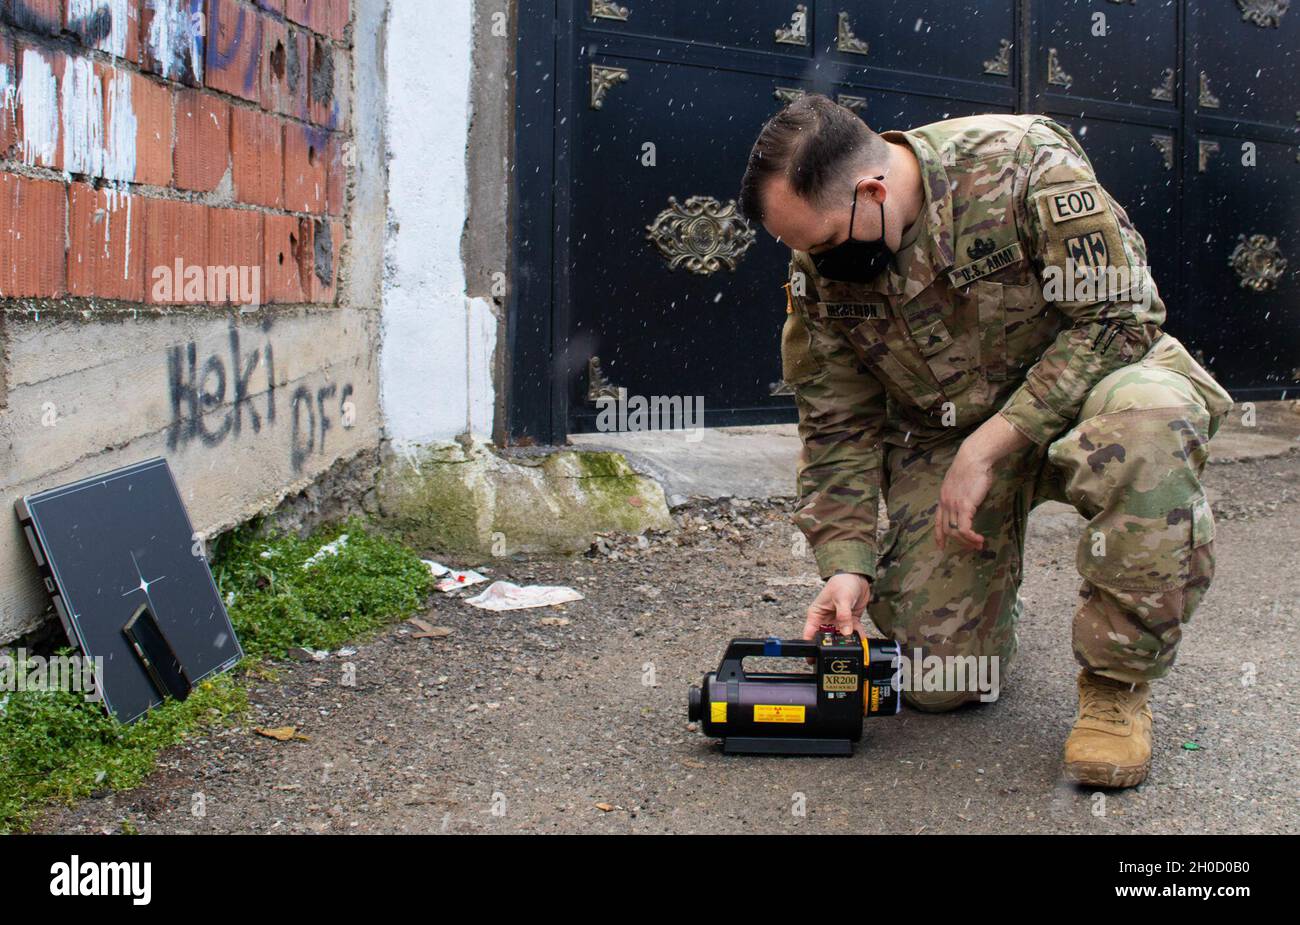 SGT. Mark Henderson, soldado del equipo de eliminación de artefactos explosivos adscrito al Comando Regional Este de la Fuerza de Kosovo, prueba un sistema de rayos X durante una llamada de emergencia de la AOD en Gjilan/Gnjilane, Kosovo, el 27 de enero de 2021. Henderson utilizó los rayos X para determinar si los artefactos explosivos eran seguros para ser movidos. La 702nd Ordnance Company, con sede en Grafenwoehr, Alemania, está apoyando la misión de la KFOR encabezada por la OTAN, dedicada a crear un entorno seguro para todas las personas de Kosovo. Foto de stock